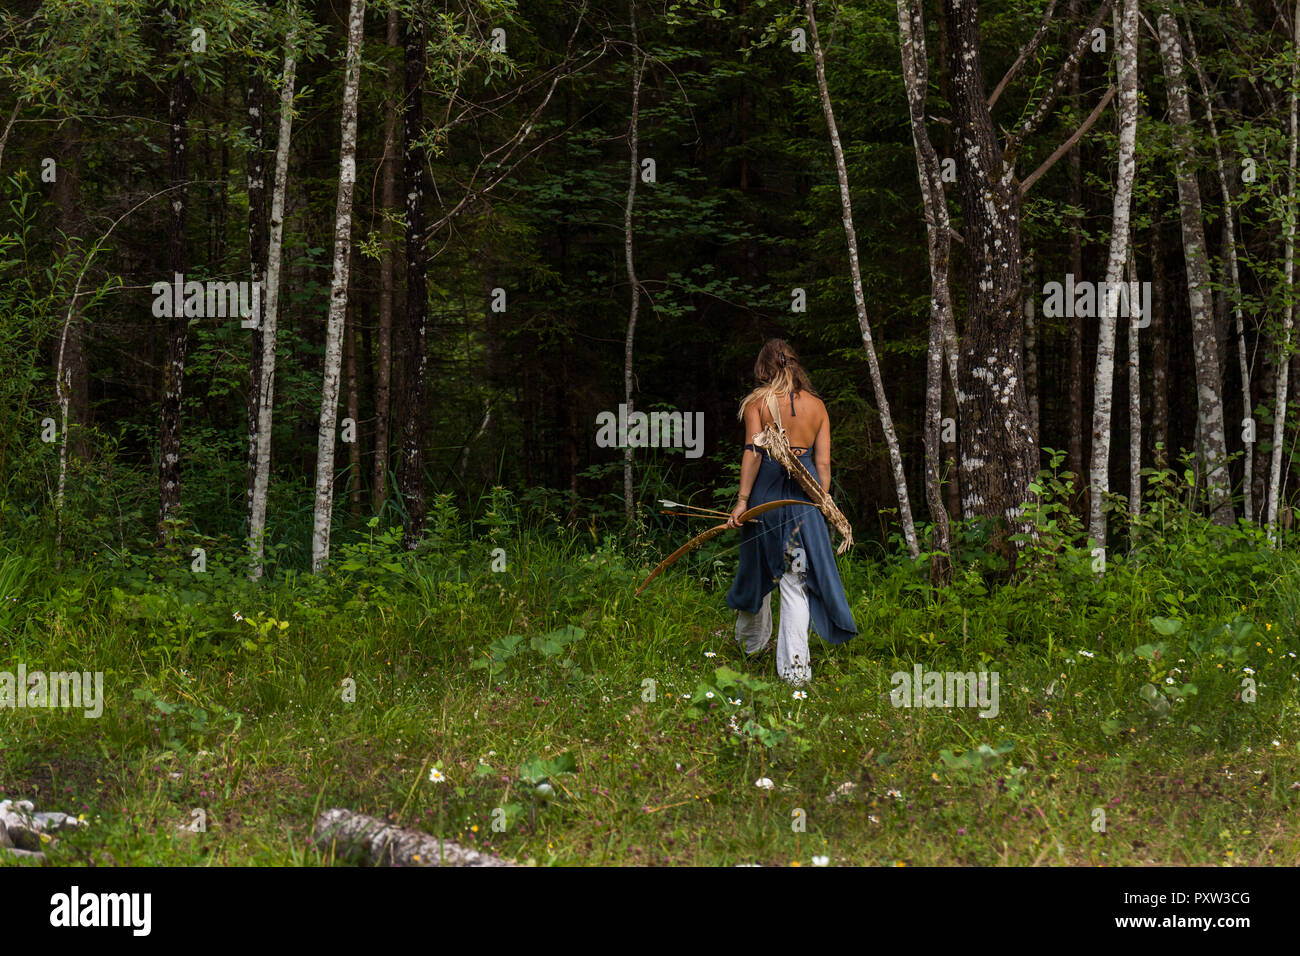 Vista posteriore della donna che cammina in una foresta con arco e frecce Foto Stock